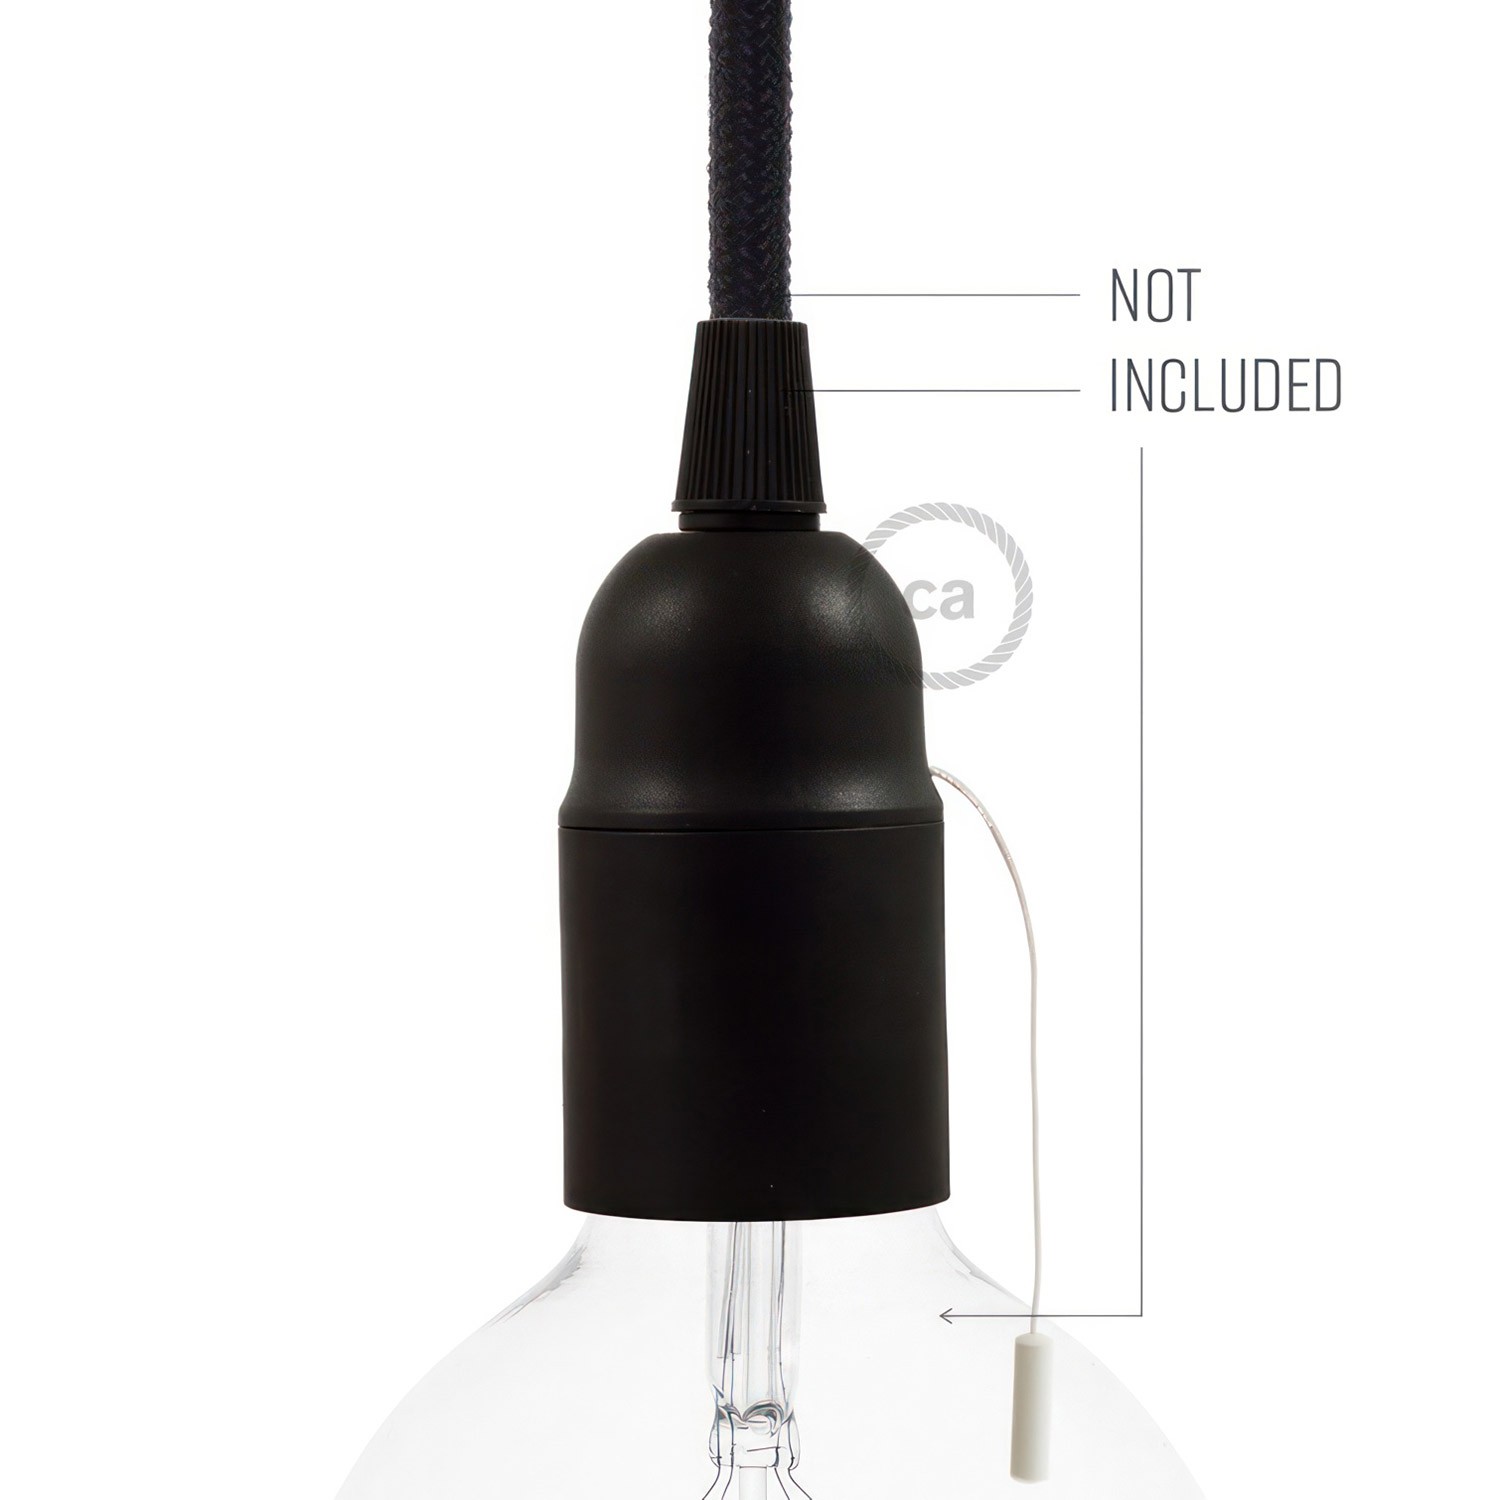 Termoplastisk E27-lampeholder-sæt med afbryder